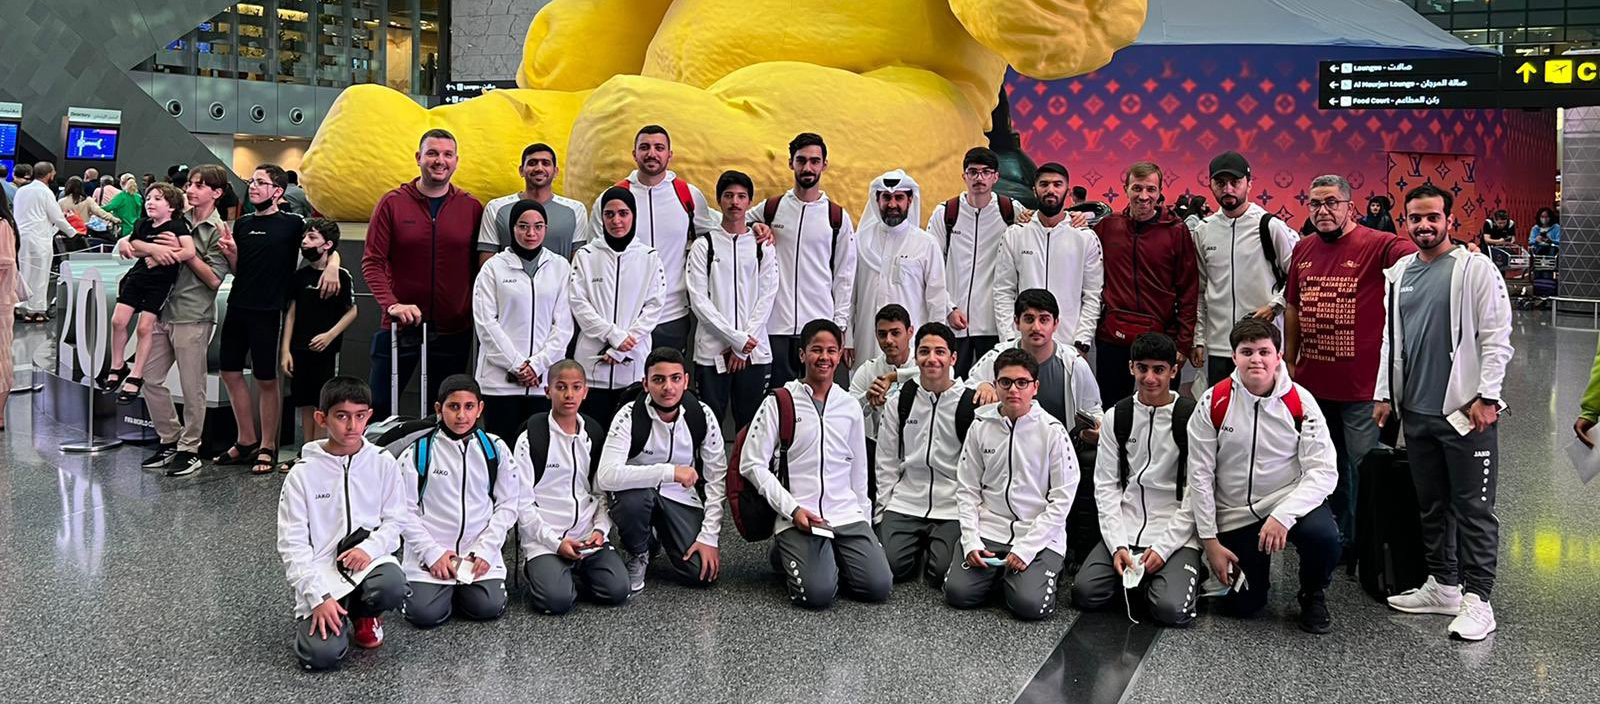  Qatar’s table tennis team